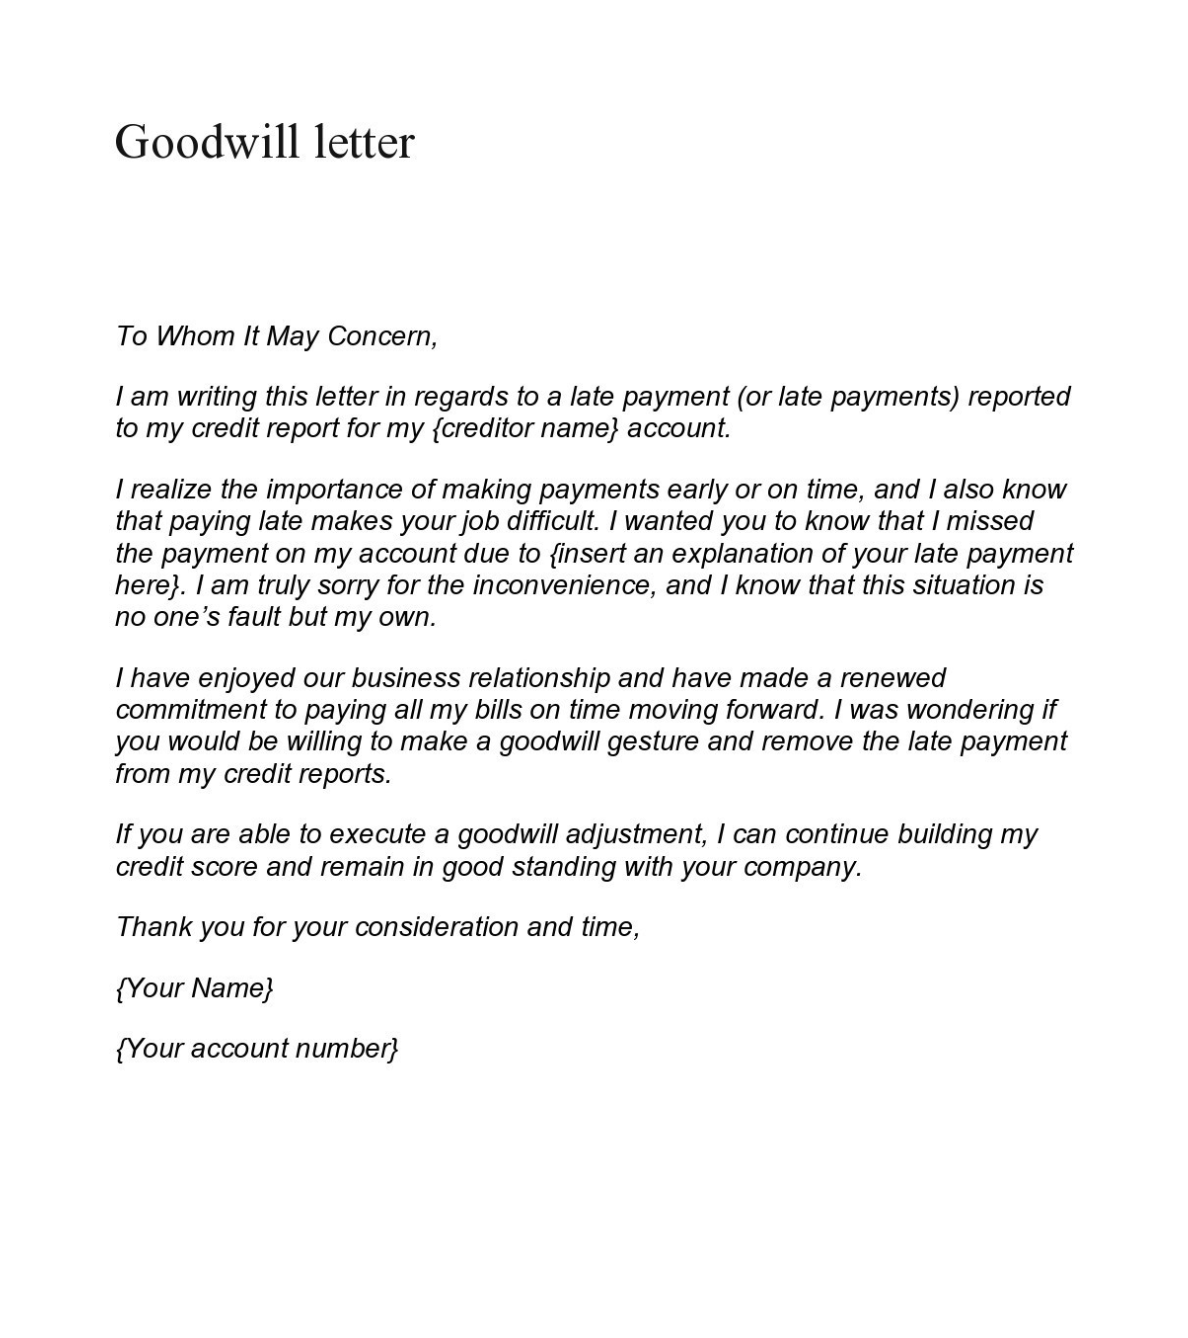 sample goodwill letter